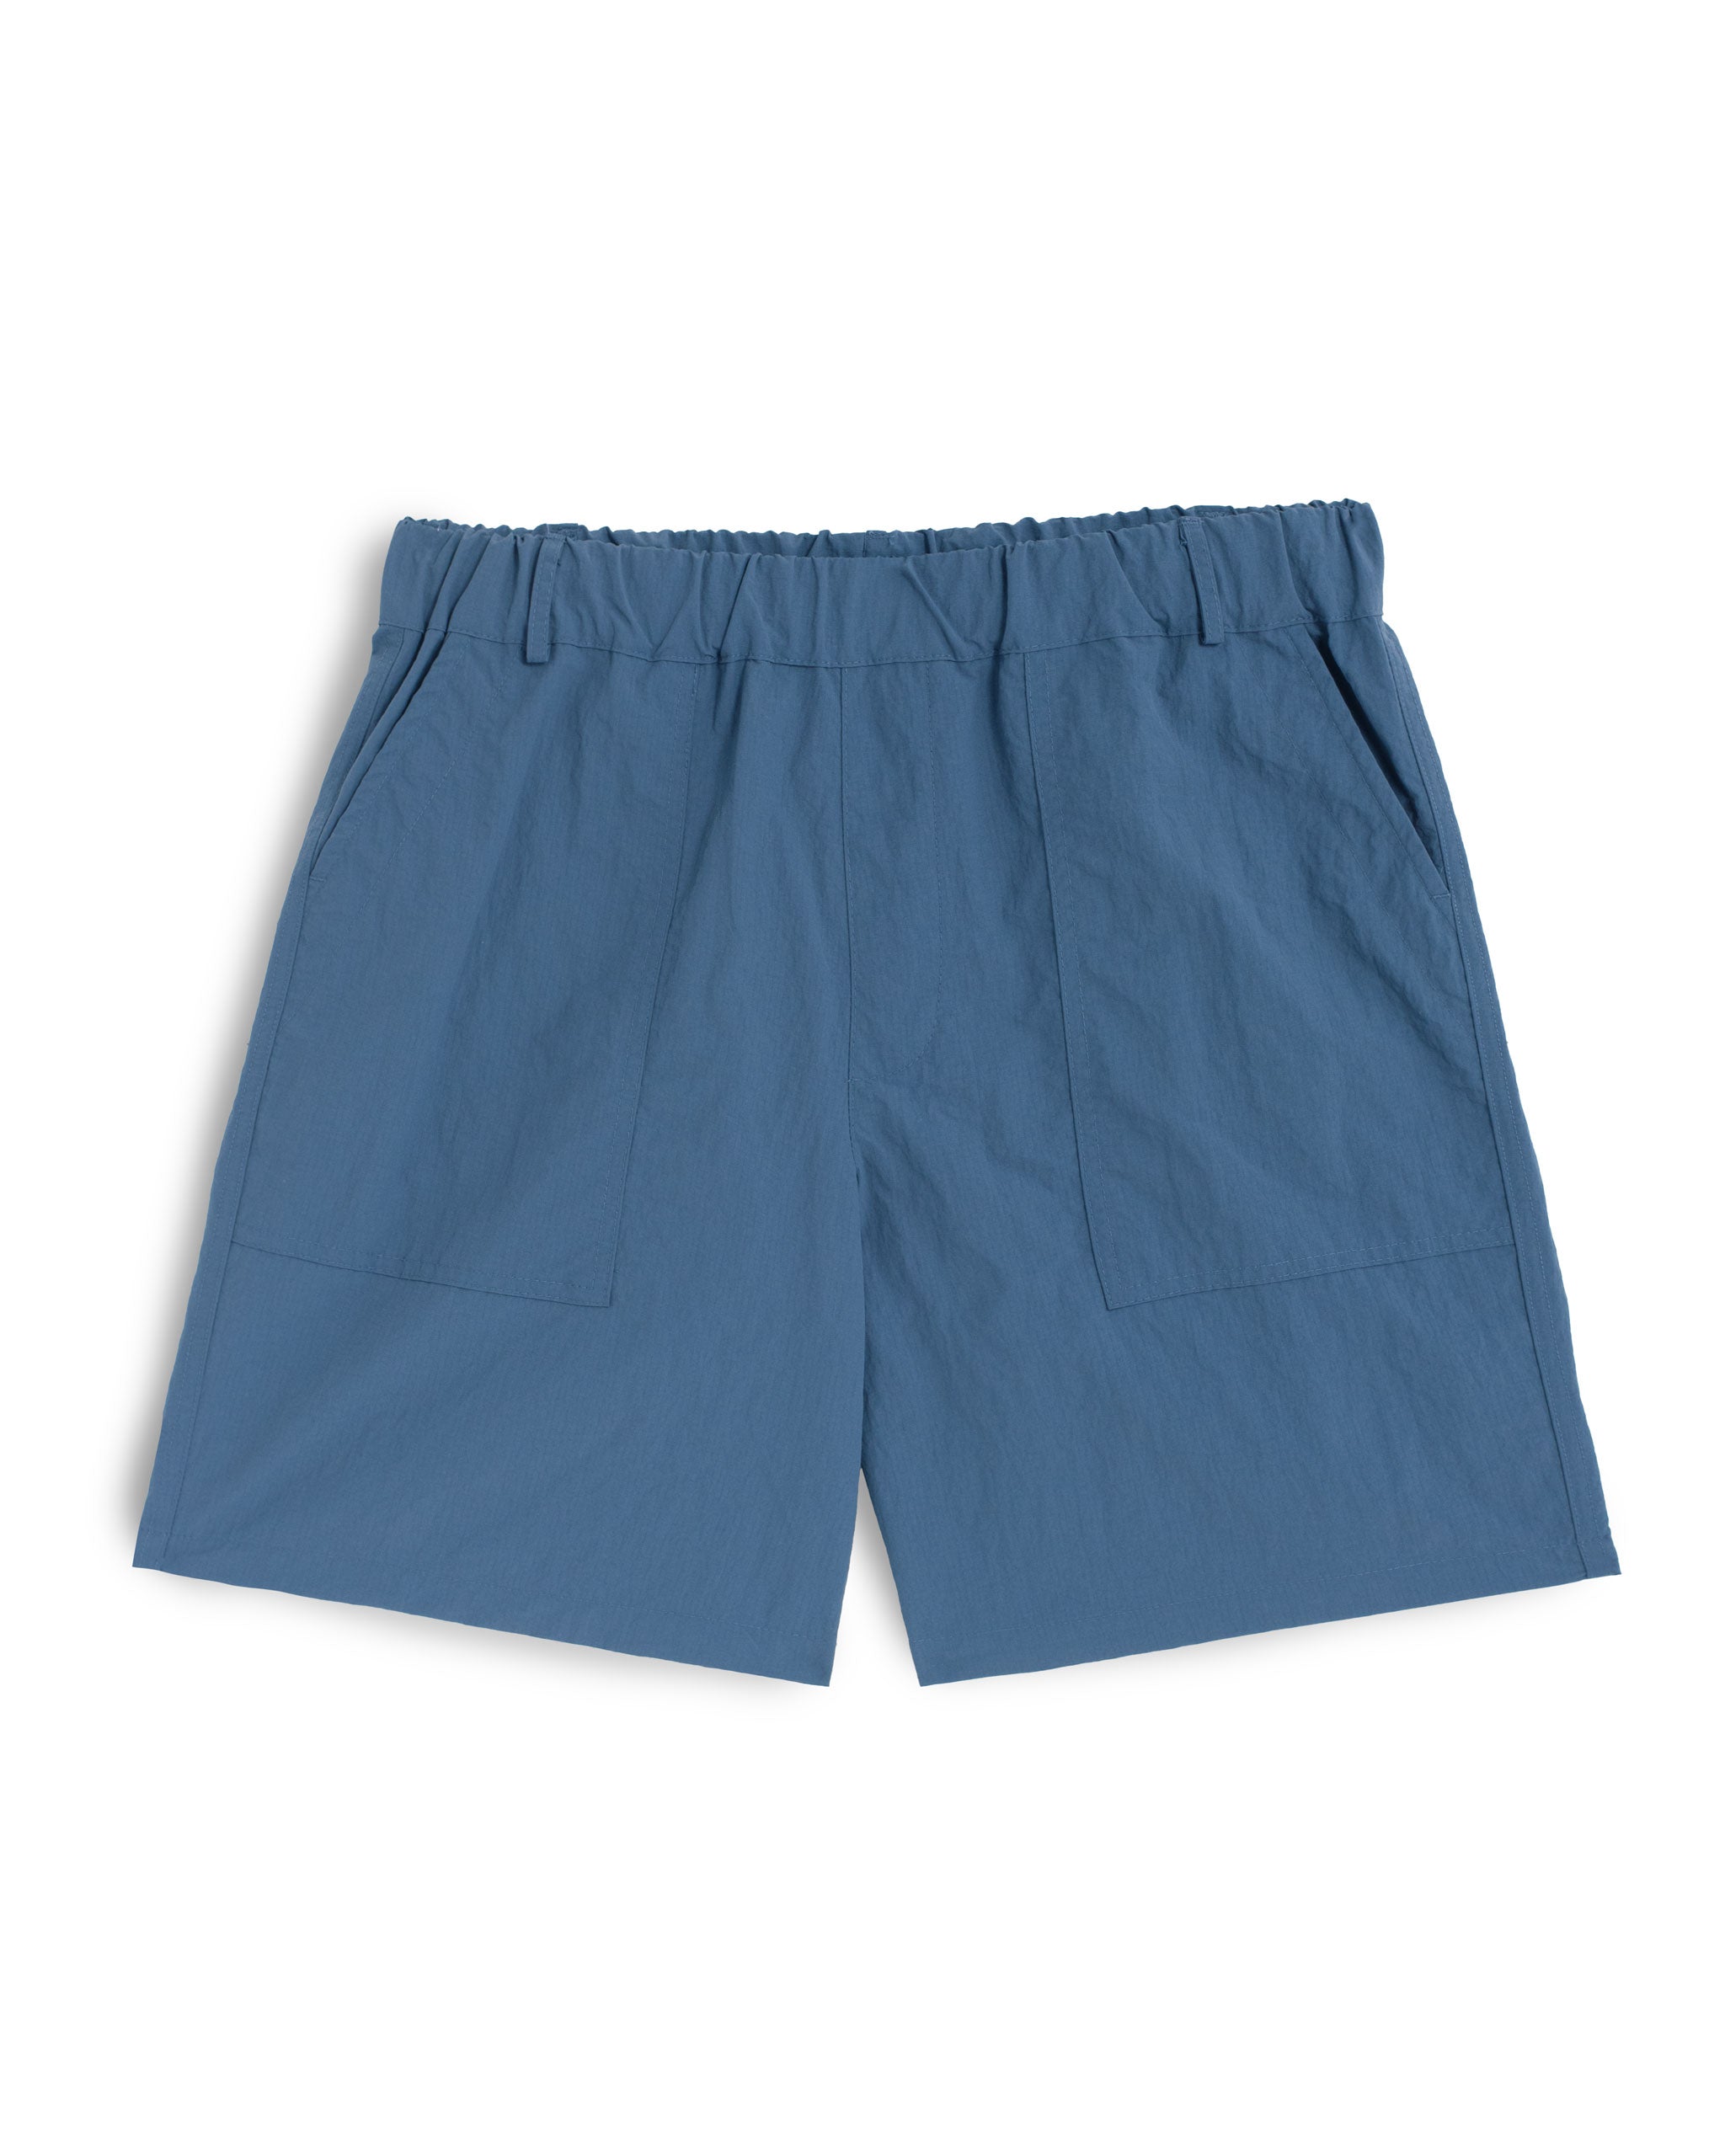 Blue utility shorts in 100% nylon